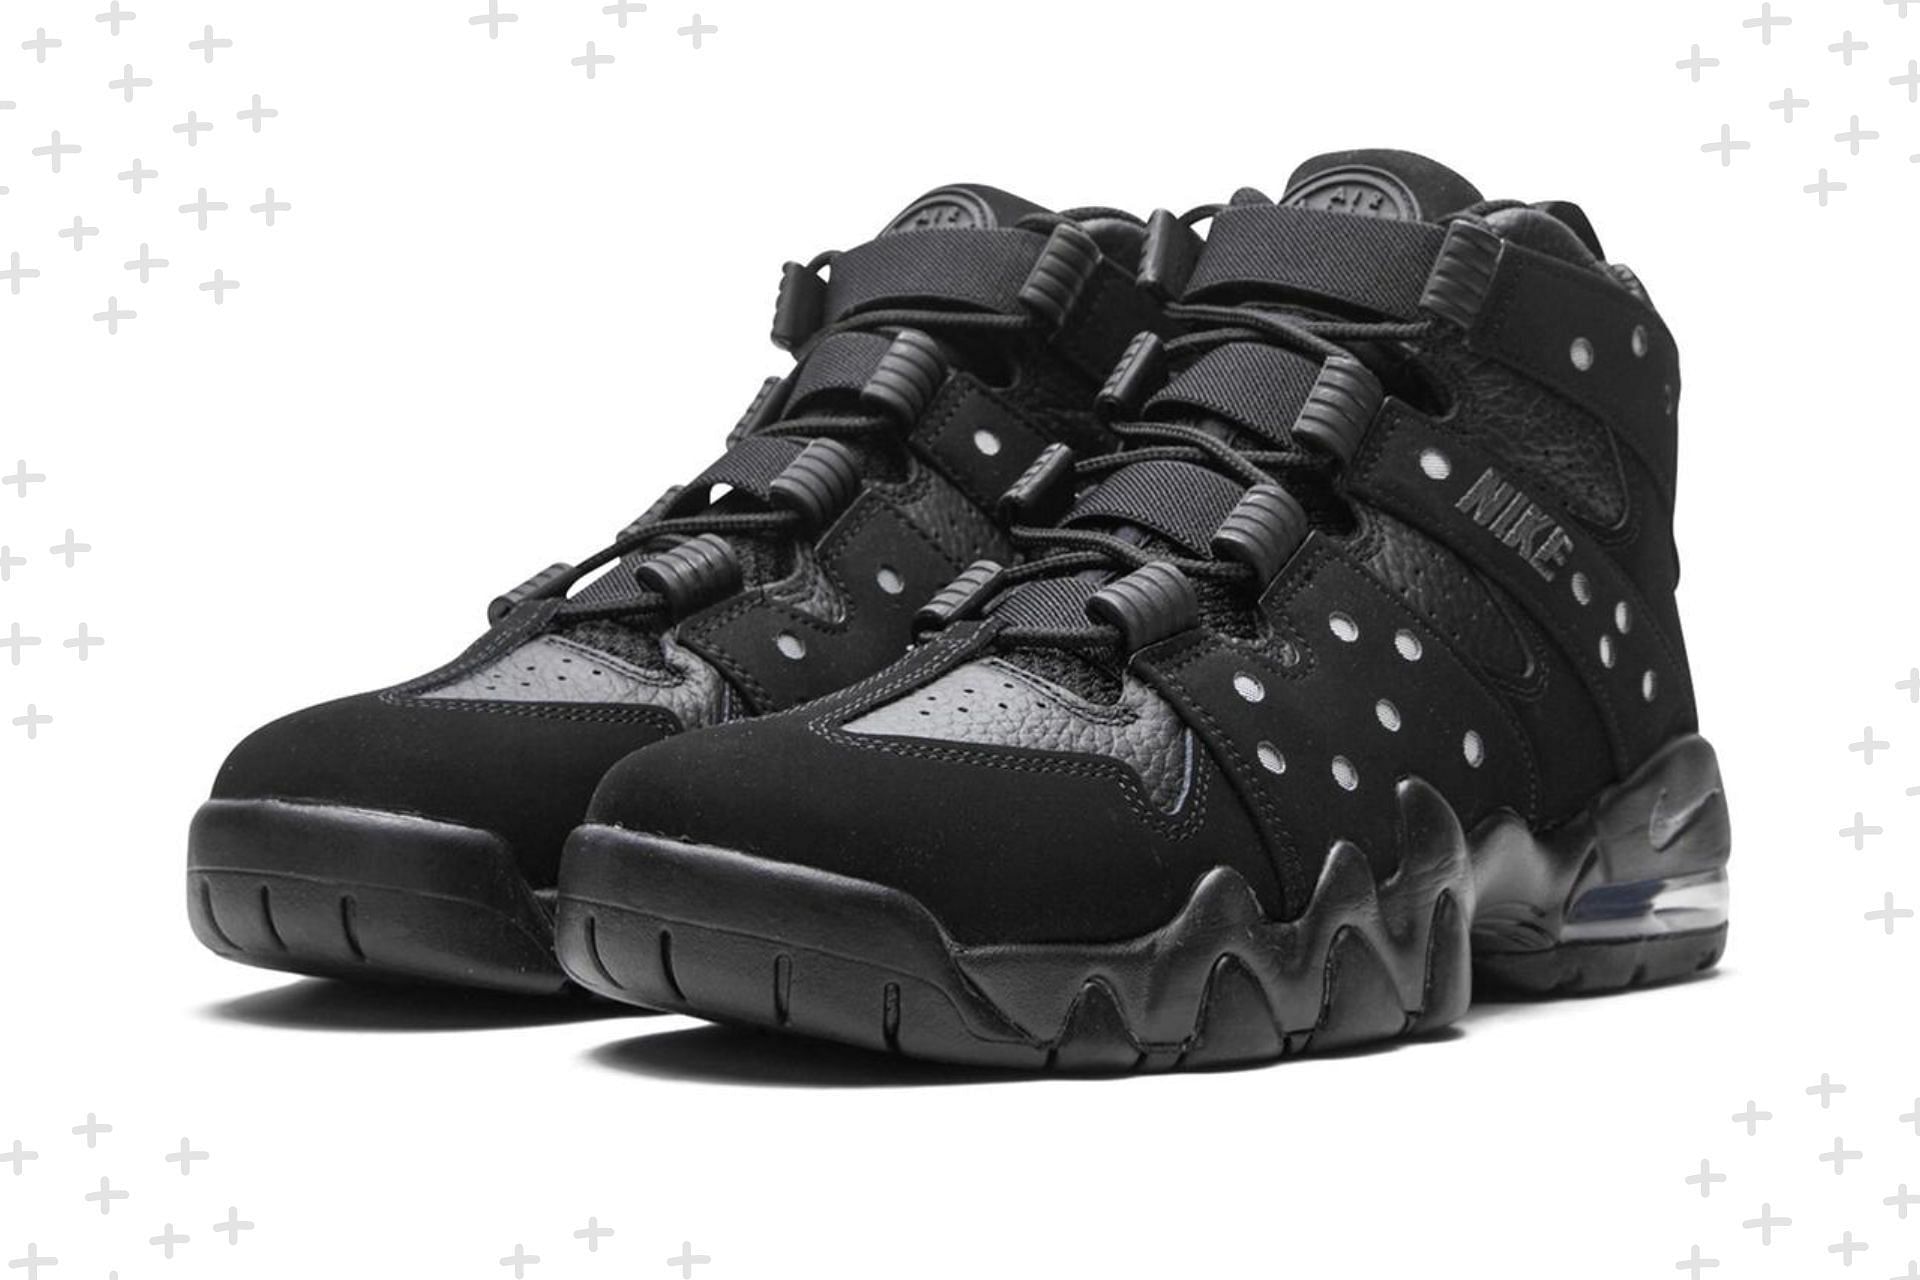 Nike Air Max CB 94 Black/Game Royal shoes (Image via Nike)